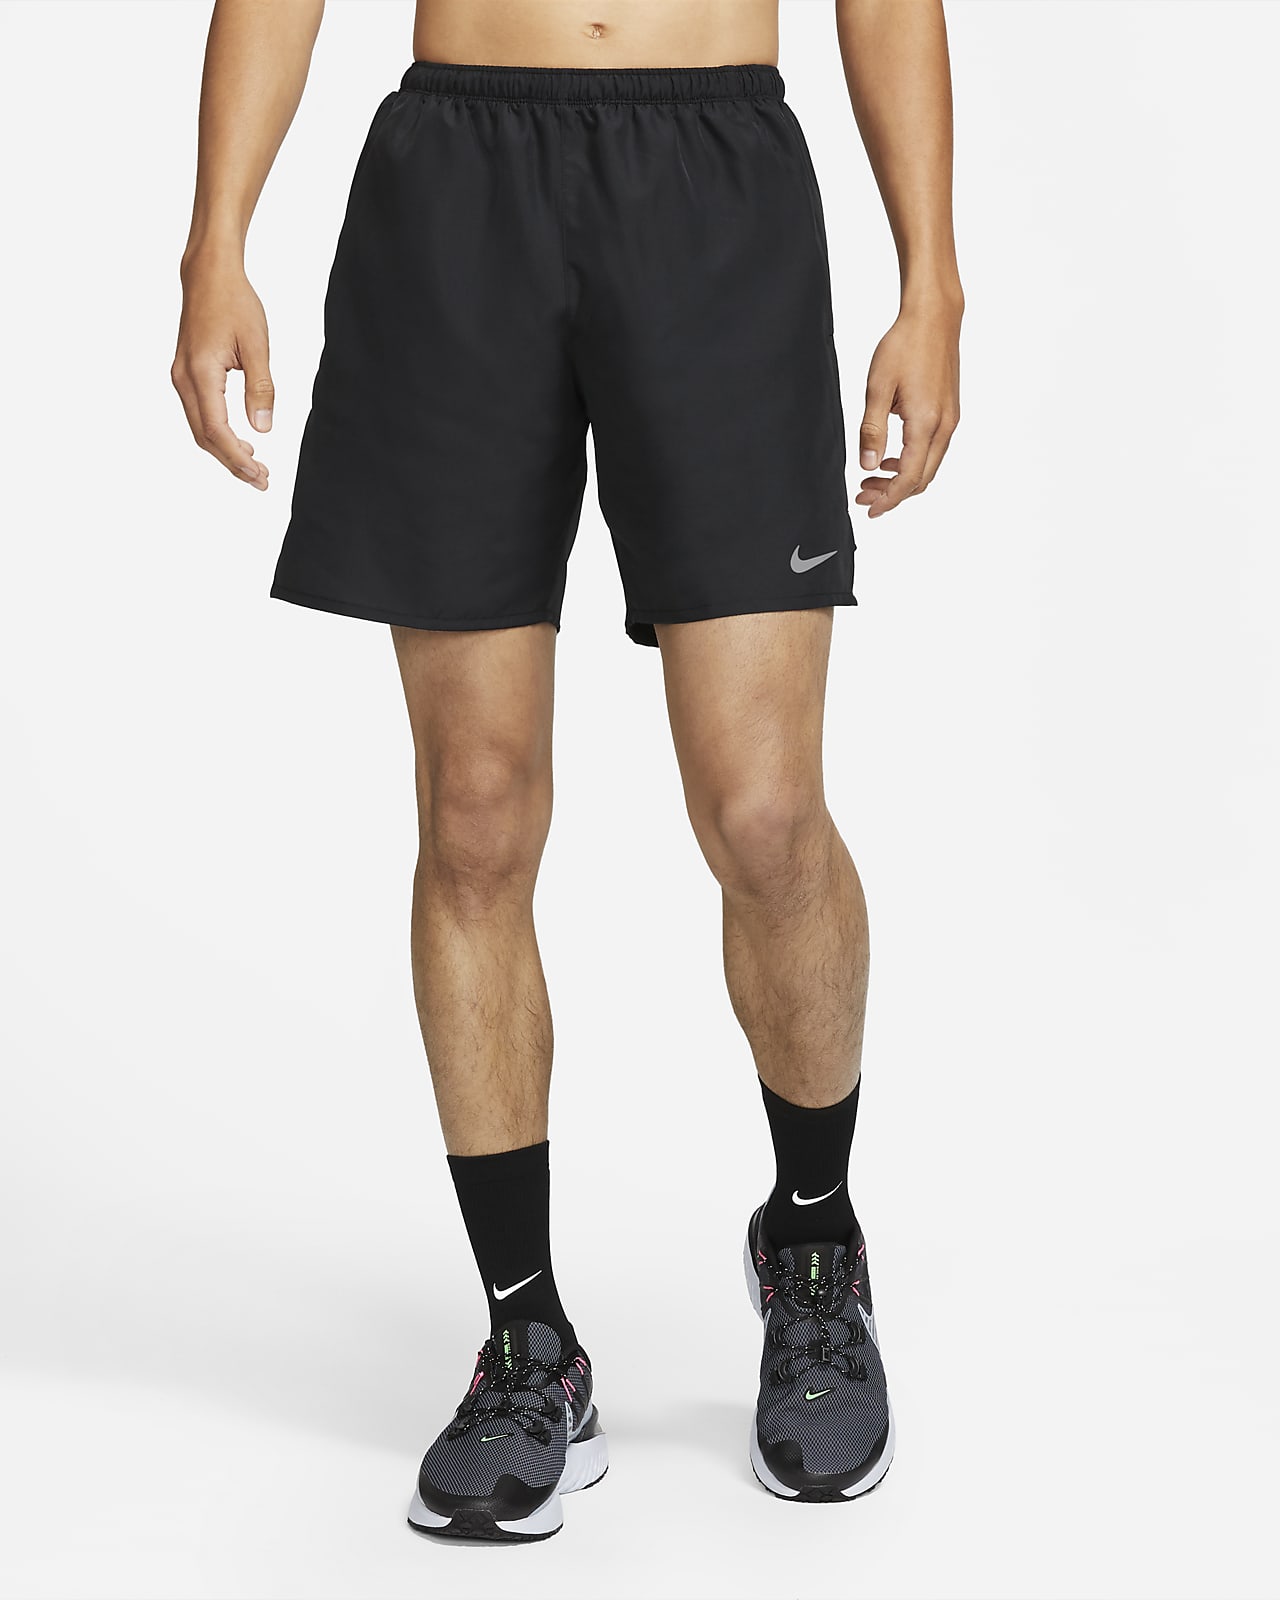 Nike Challenger Men's Running Shorts